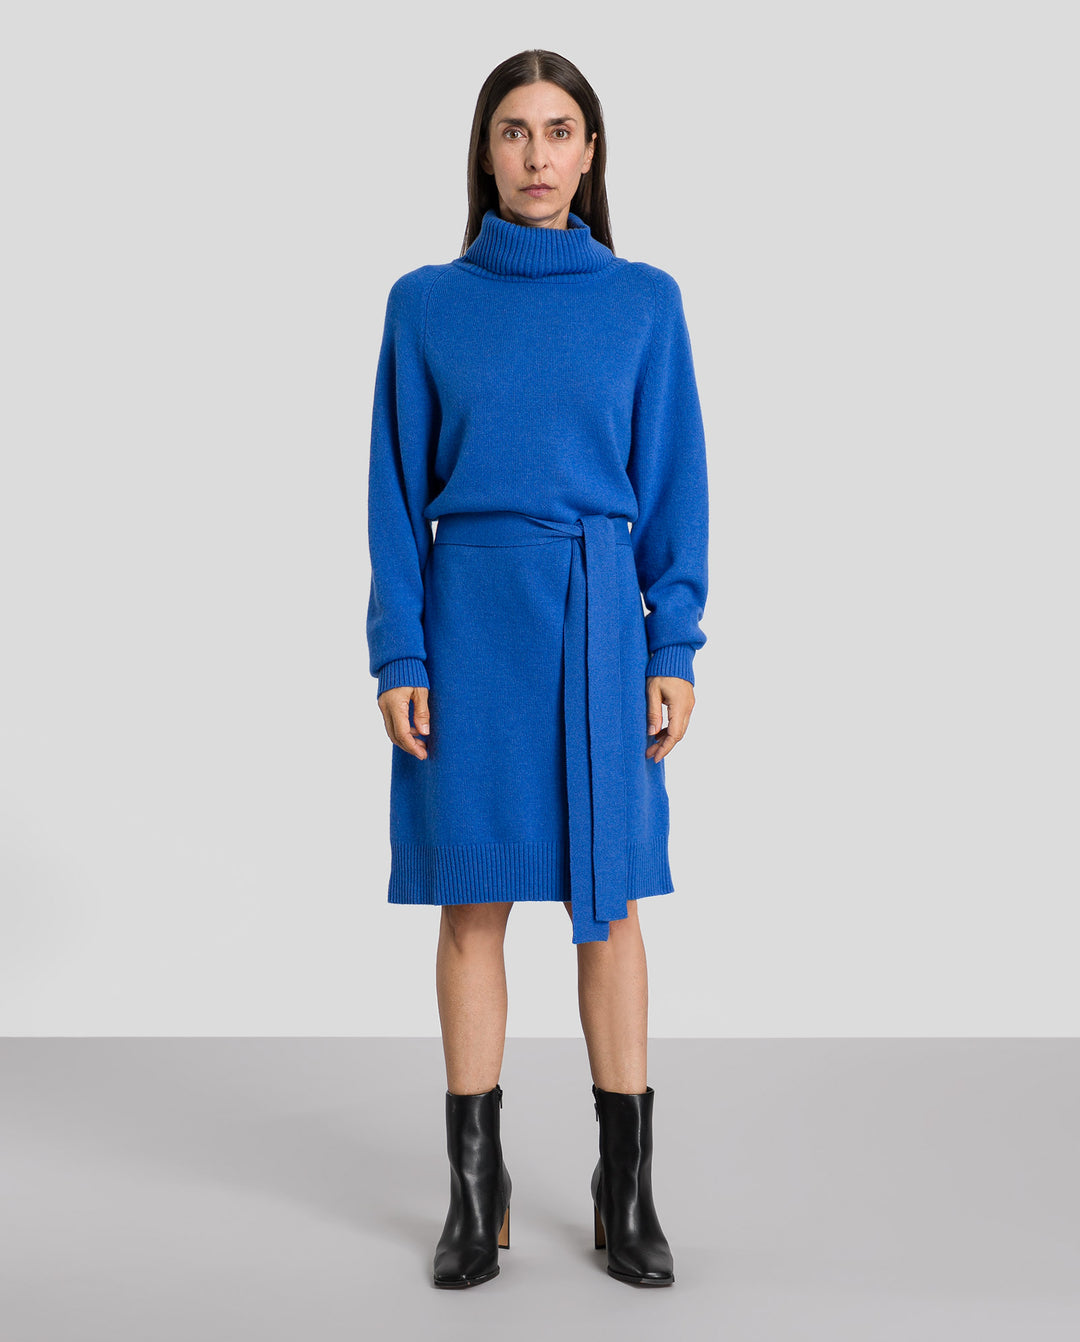 Kamela Ann mini knit dress in light cobalt blue